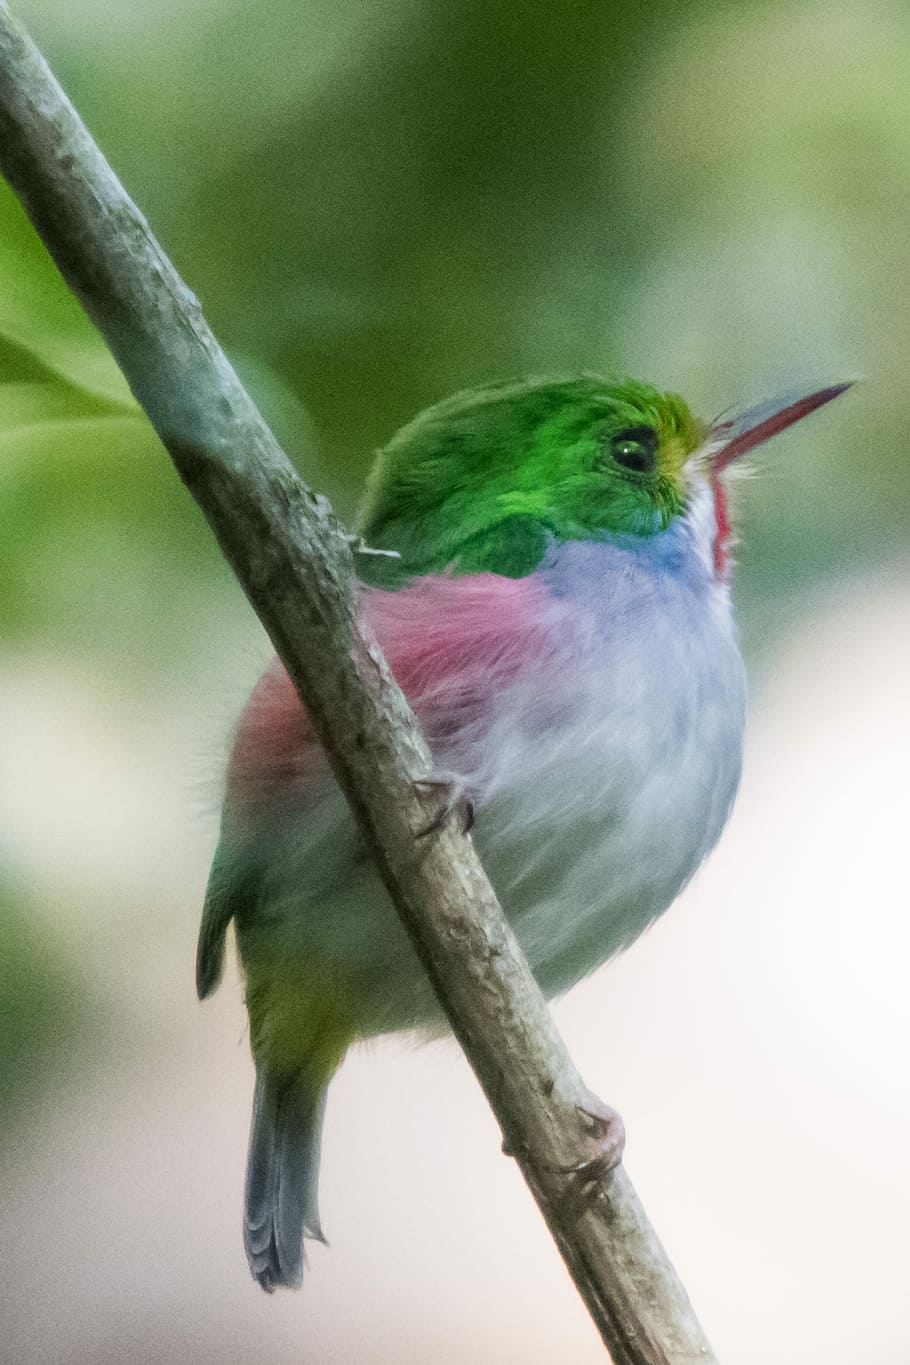 green, white, short-beak bird, perched, tree branch, cuba, matanzas, cienaga de zapata, cartacuba, bird